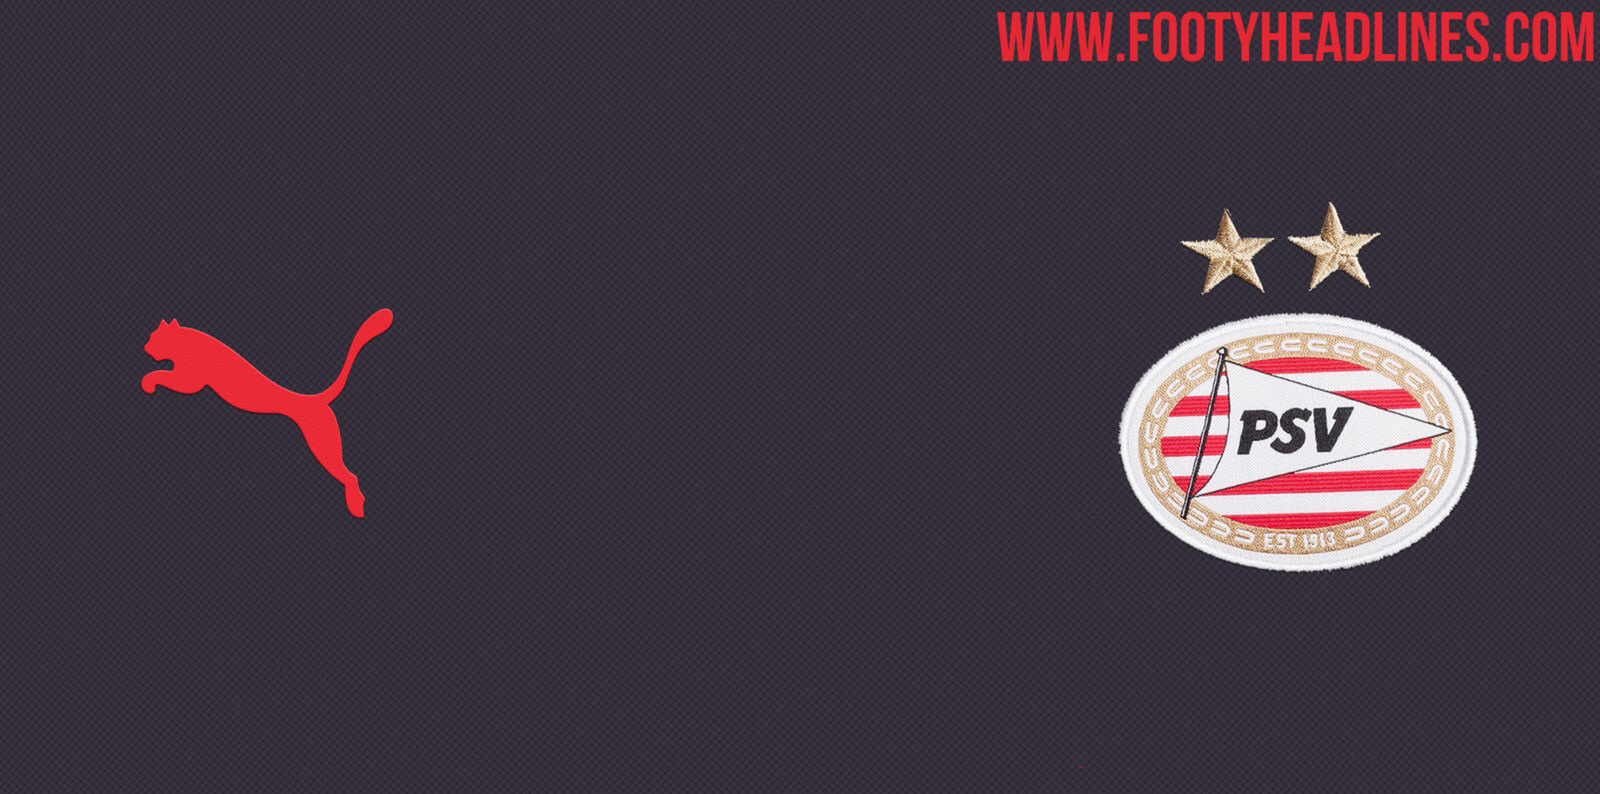 PSV presenteert volgende week nieuwe uittenue; image source: Footy Headlines